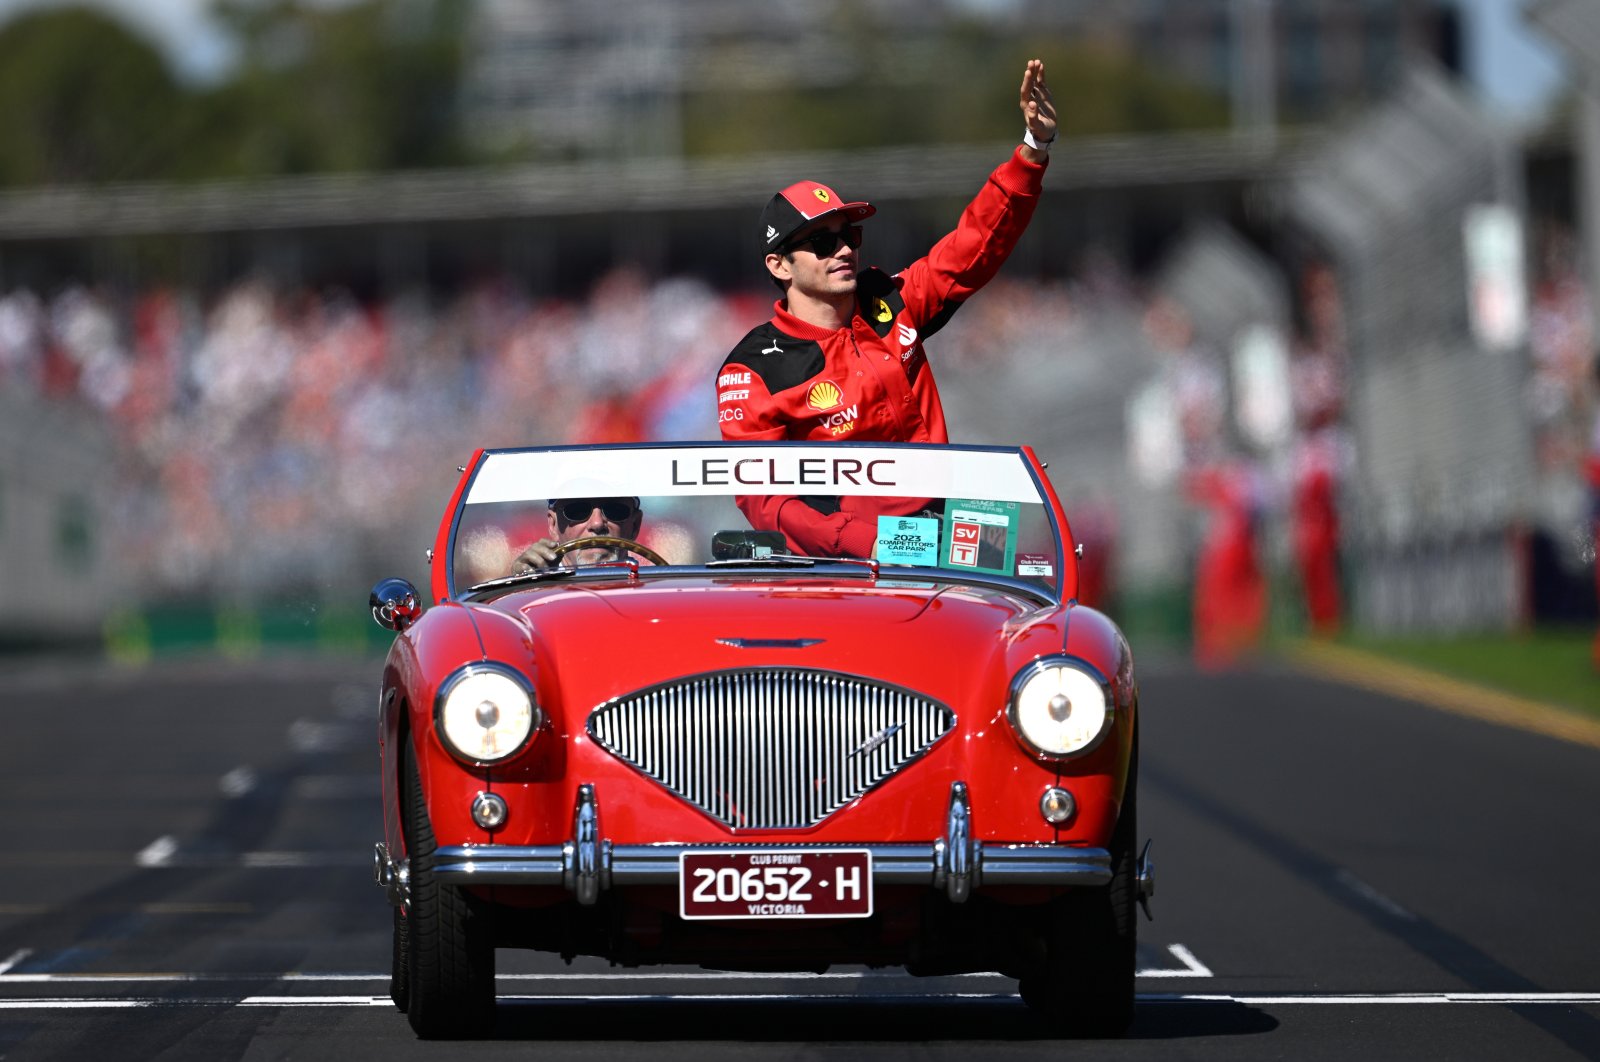 Pembalap Ferrari Leclerc memohon kepada para penggemar untuk menghormati ruang pribadinya